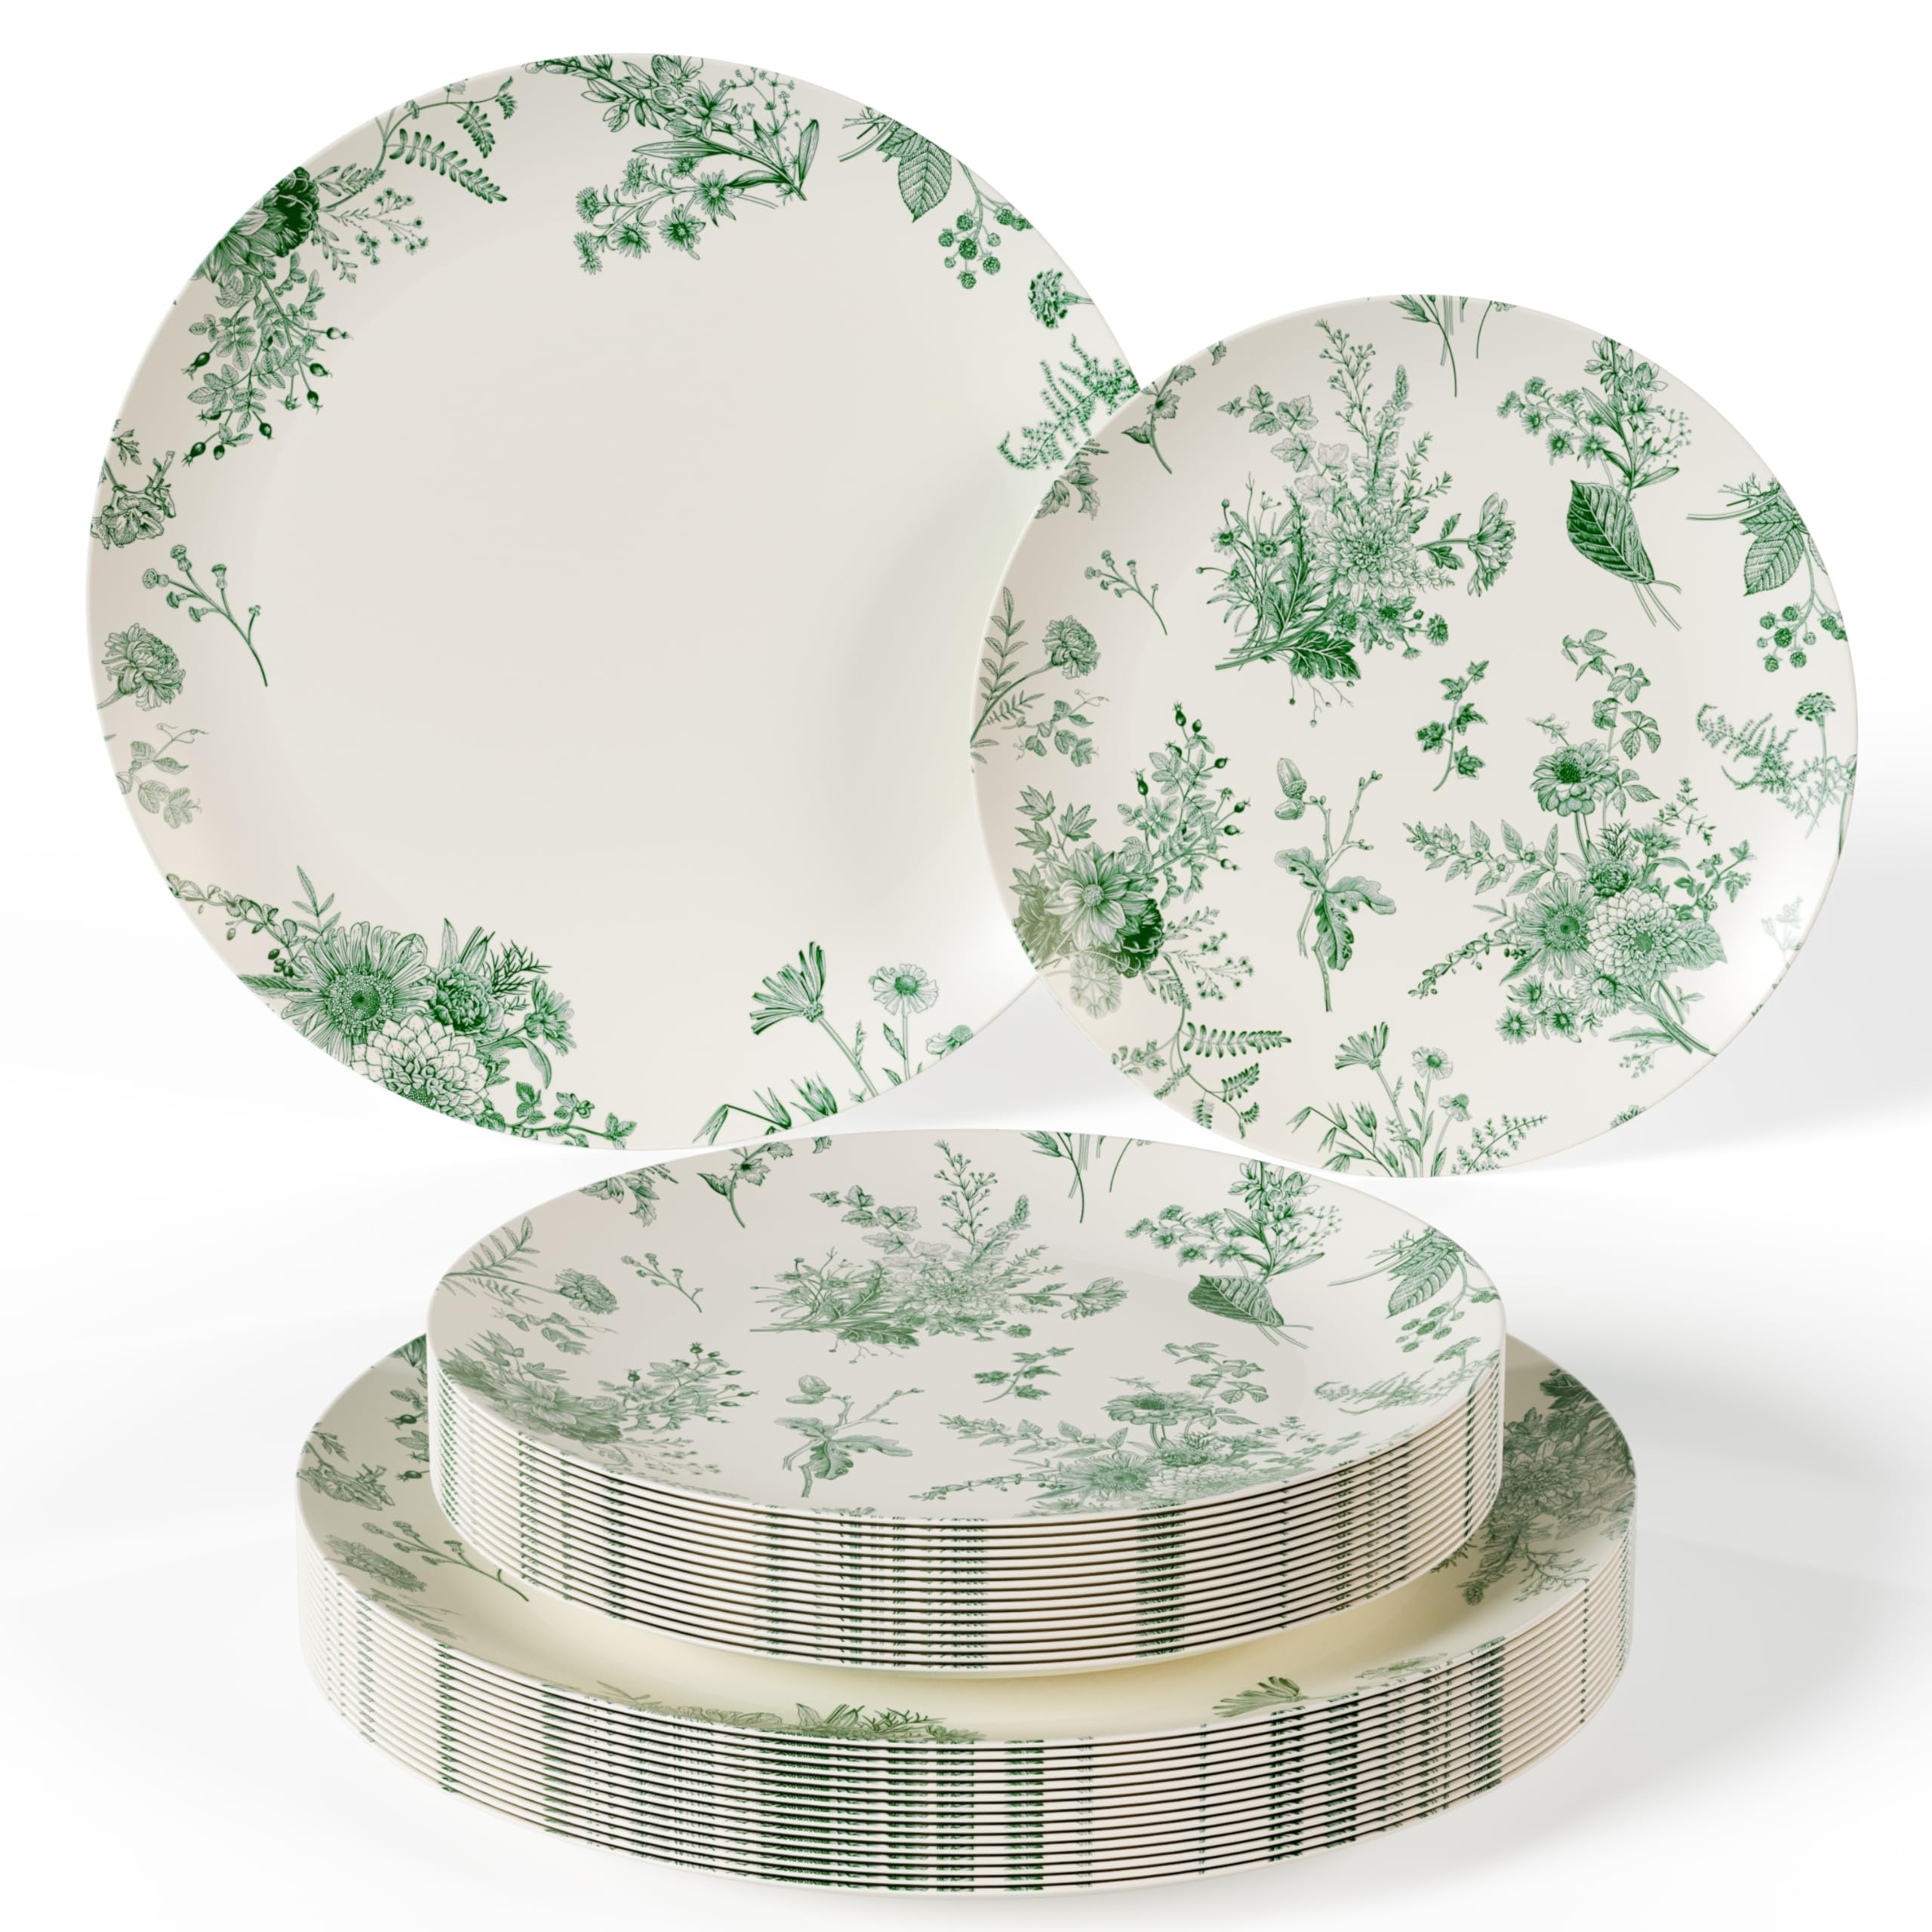 10 In. Verdure Design Plastic Plates | 10 Count